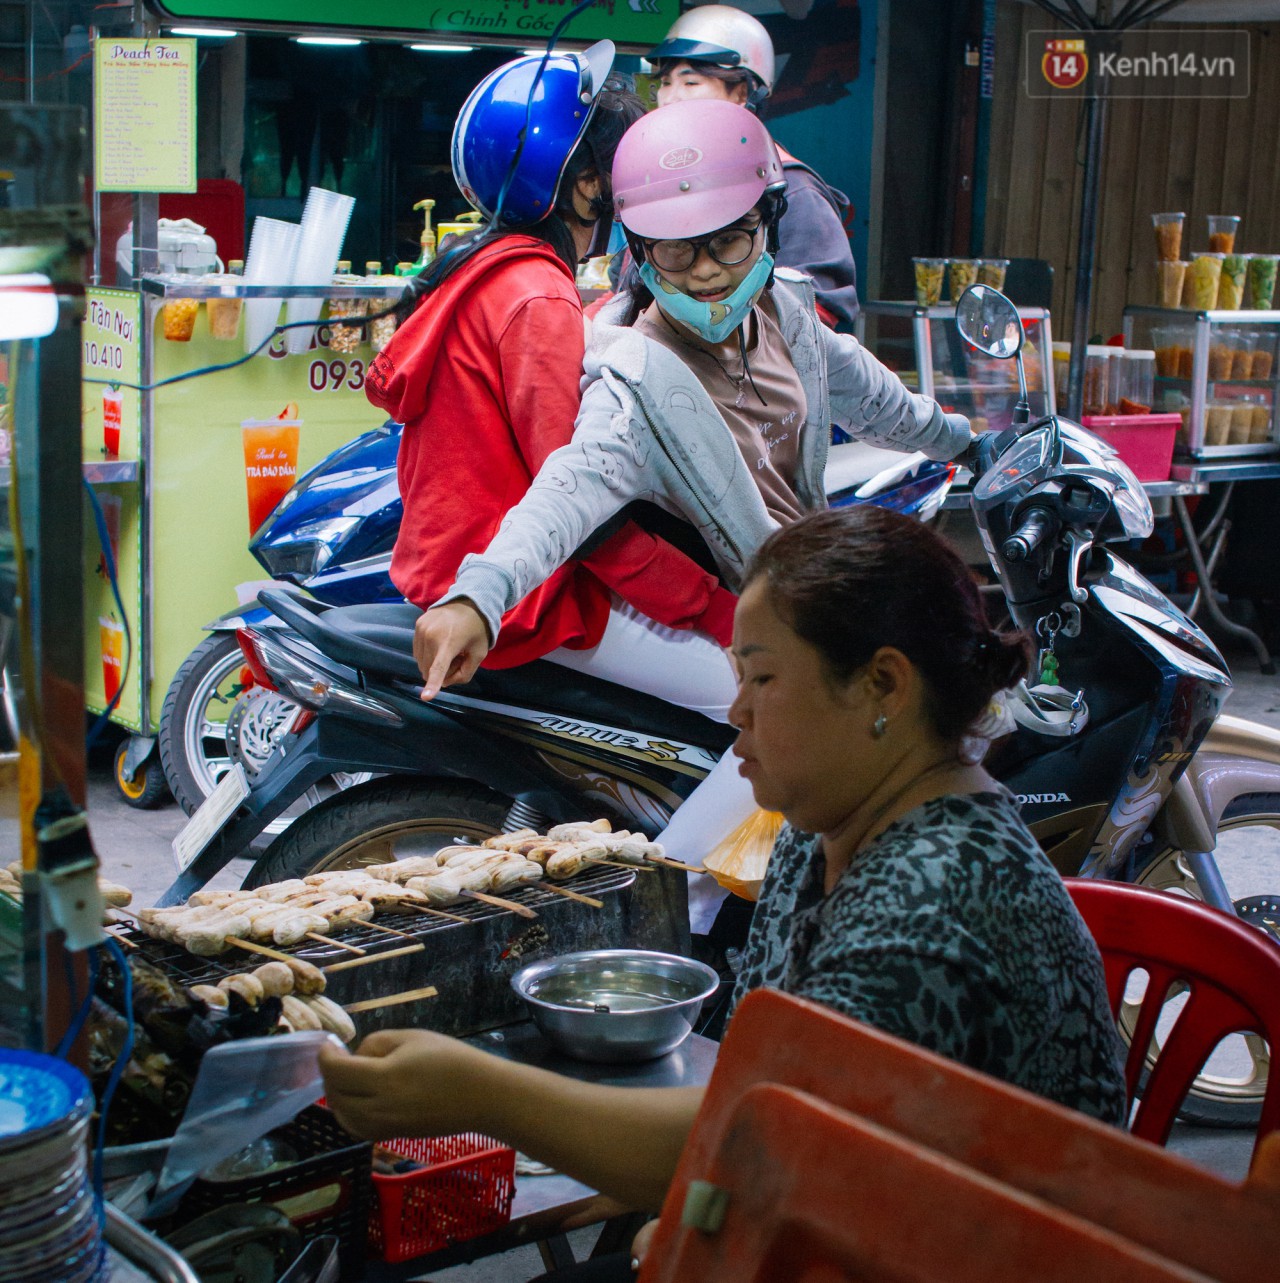 Chùm ảnh: Ở Sài Gòn, có một khu chợ mang tên Campuchia nằm trong hẻm nhỏ nhưng hội tụ đủ hàng ăn thức uống các vùng miền - Ảnh 9.